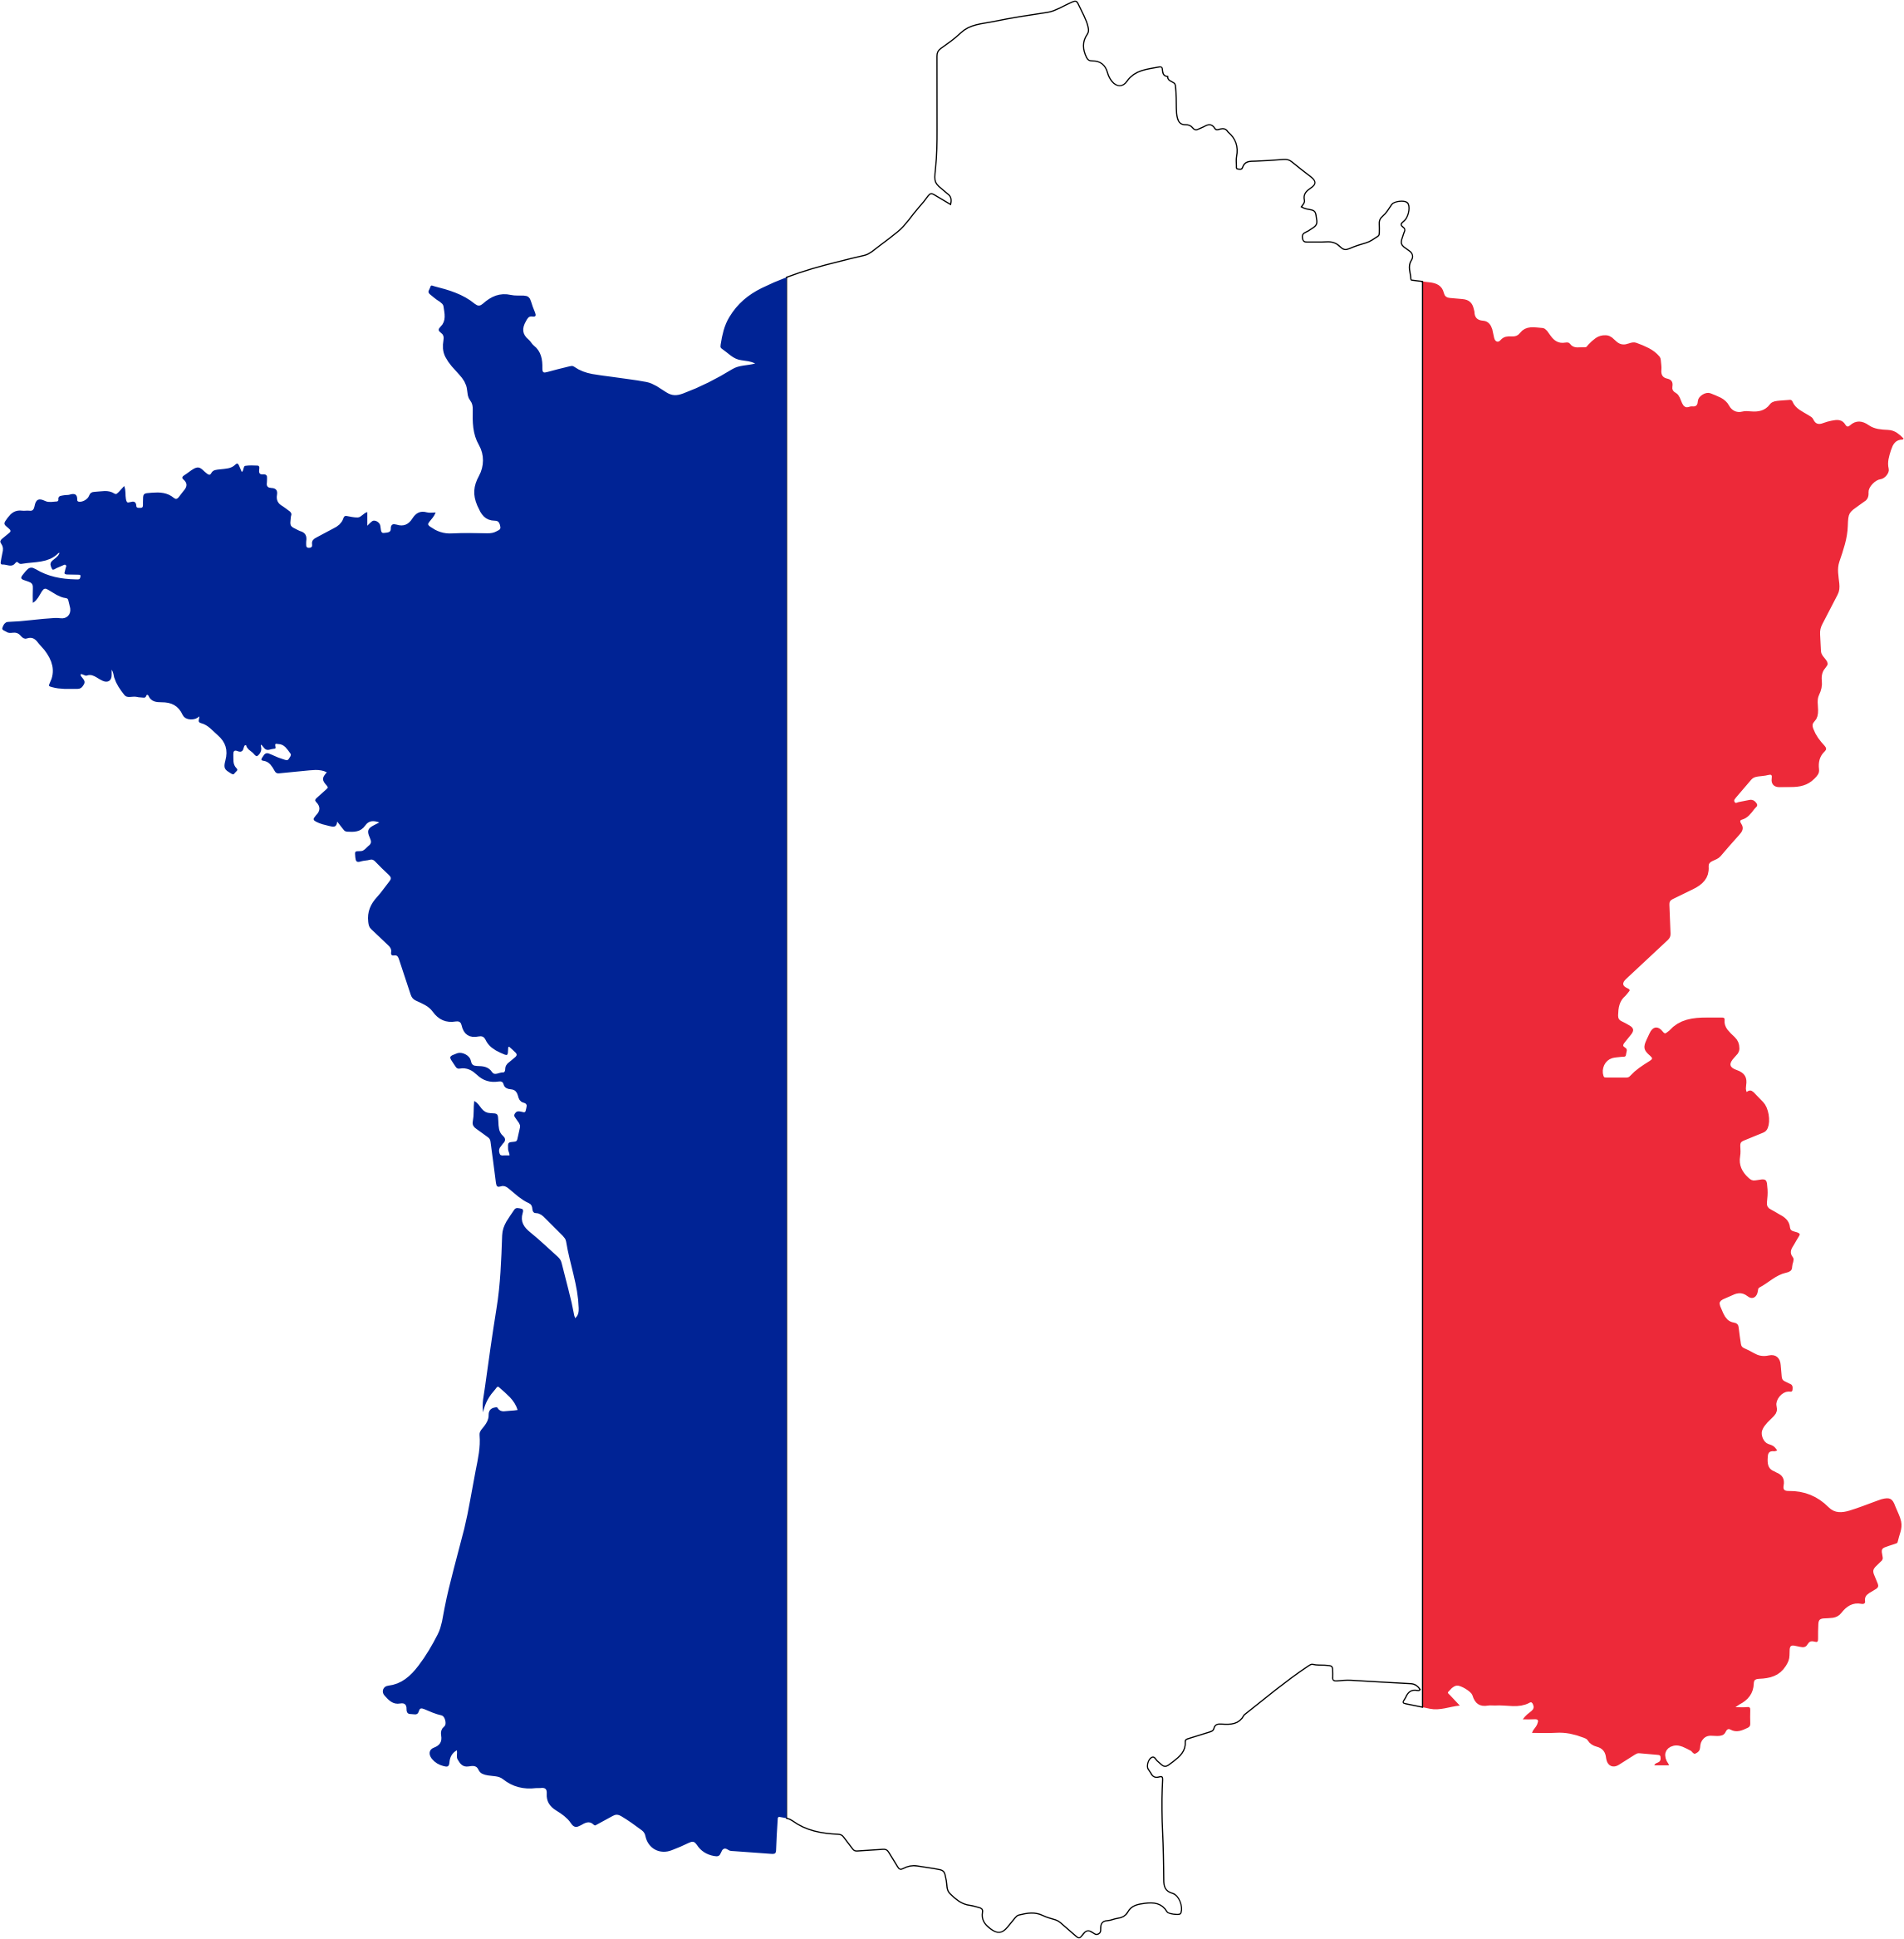 Download PNG image - France Map PNG Transparent Image 